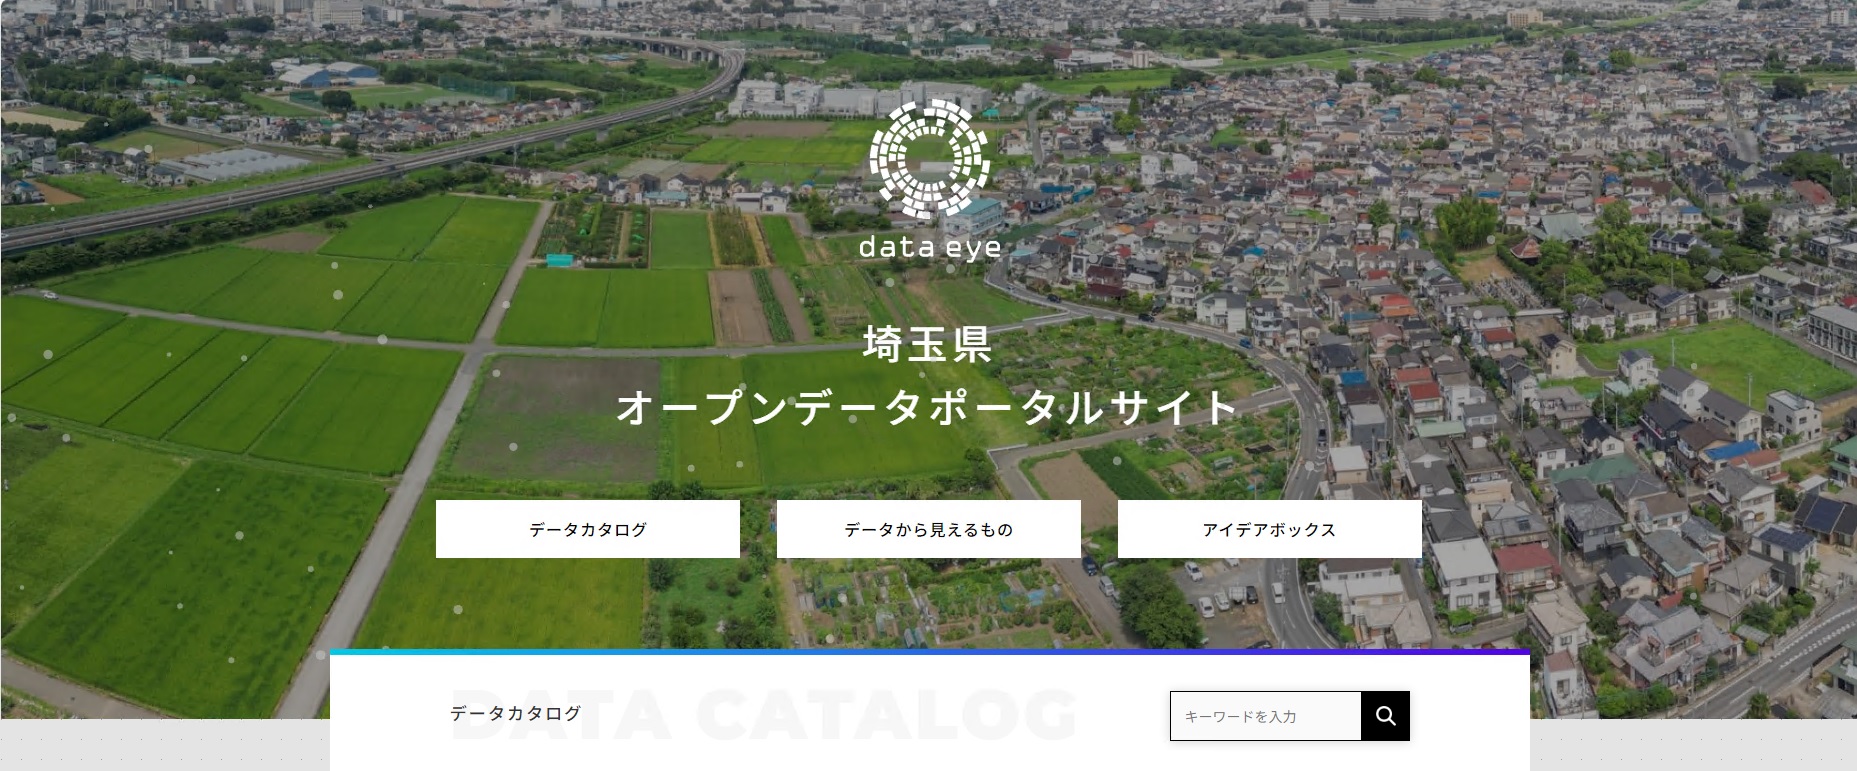 埼玉県オープンデータポータルサイトイメージ